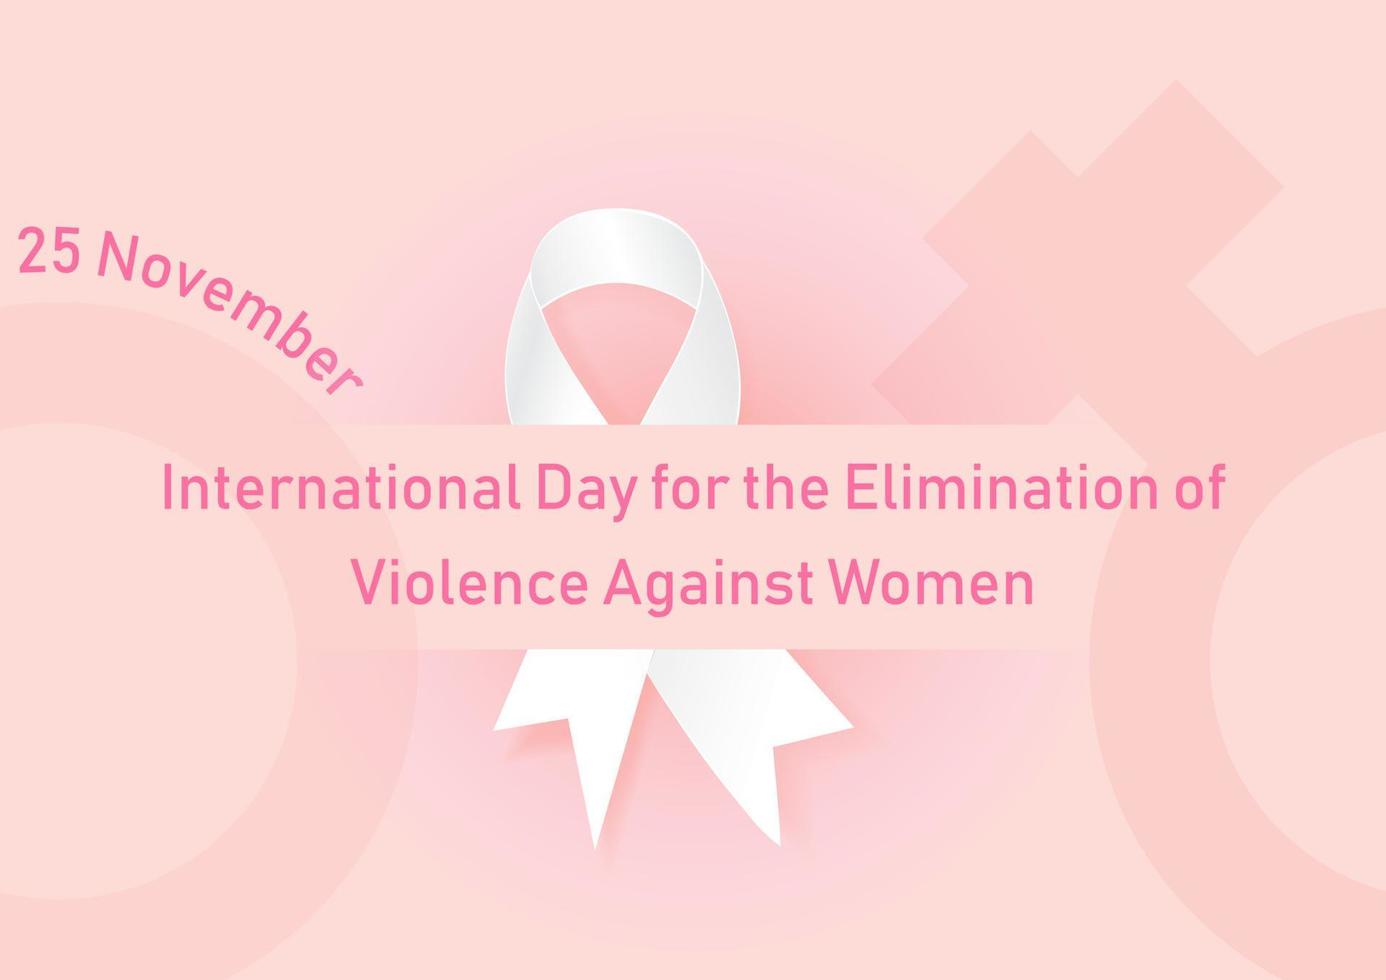 der Tag und der Name der Beseitigung von Gewalt gegen Frauen, die auf weißem Band und Frauensymbol und rosa Hintergrund formuliert sind. alles im Vektordesign. vektor